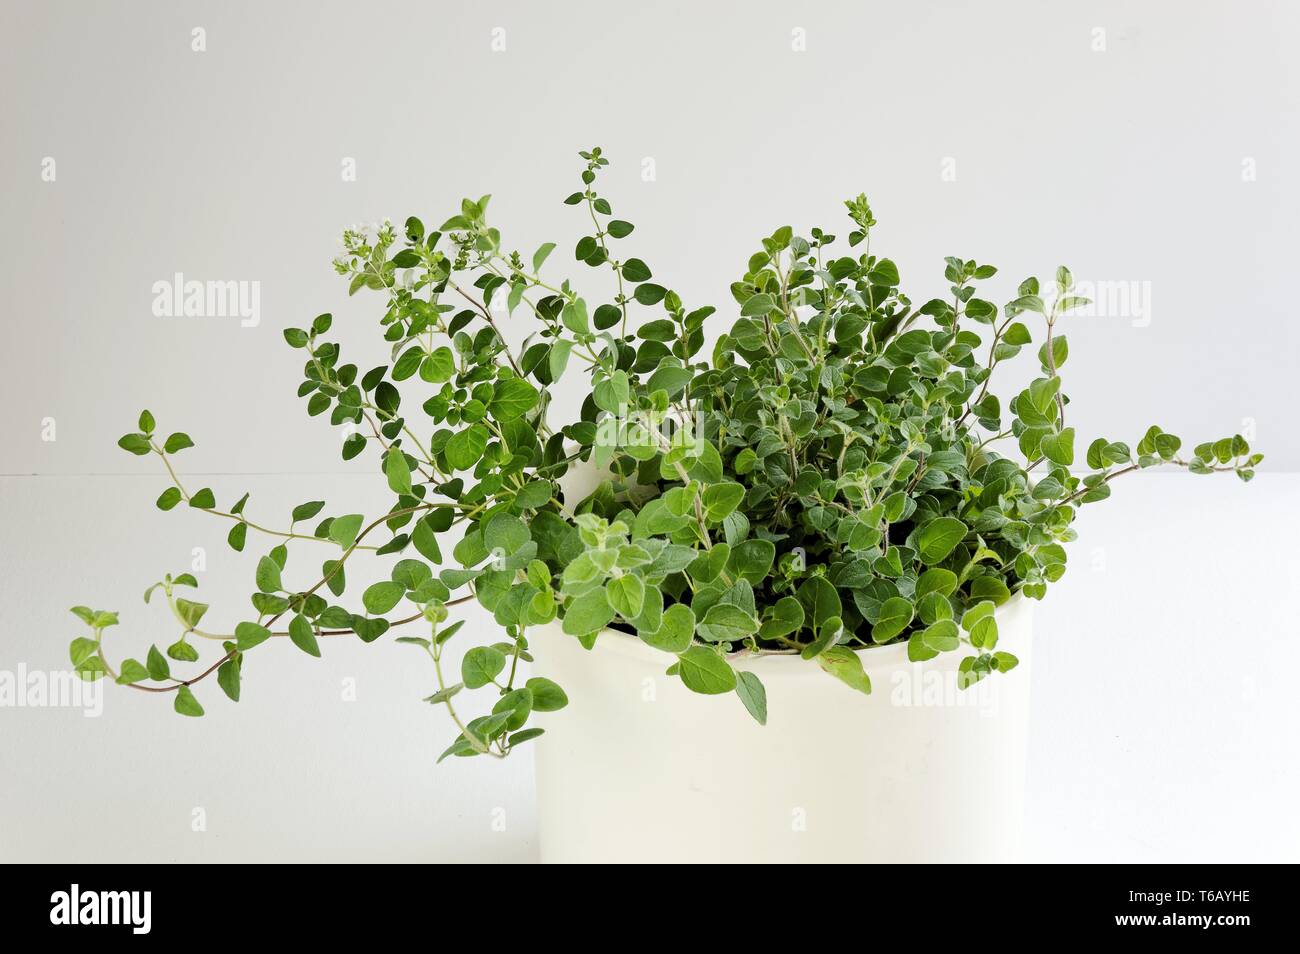 Oregano (Oregnum heracleoticum) Stock Photo